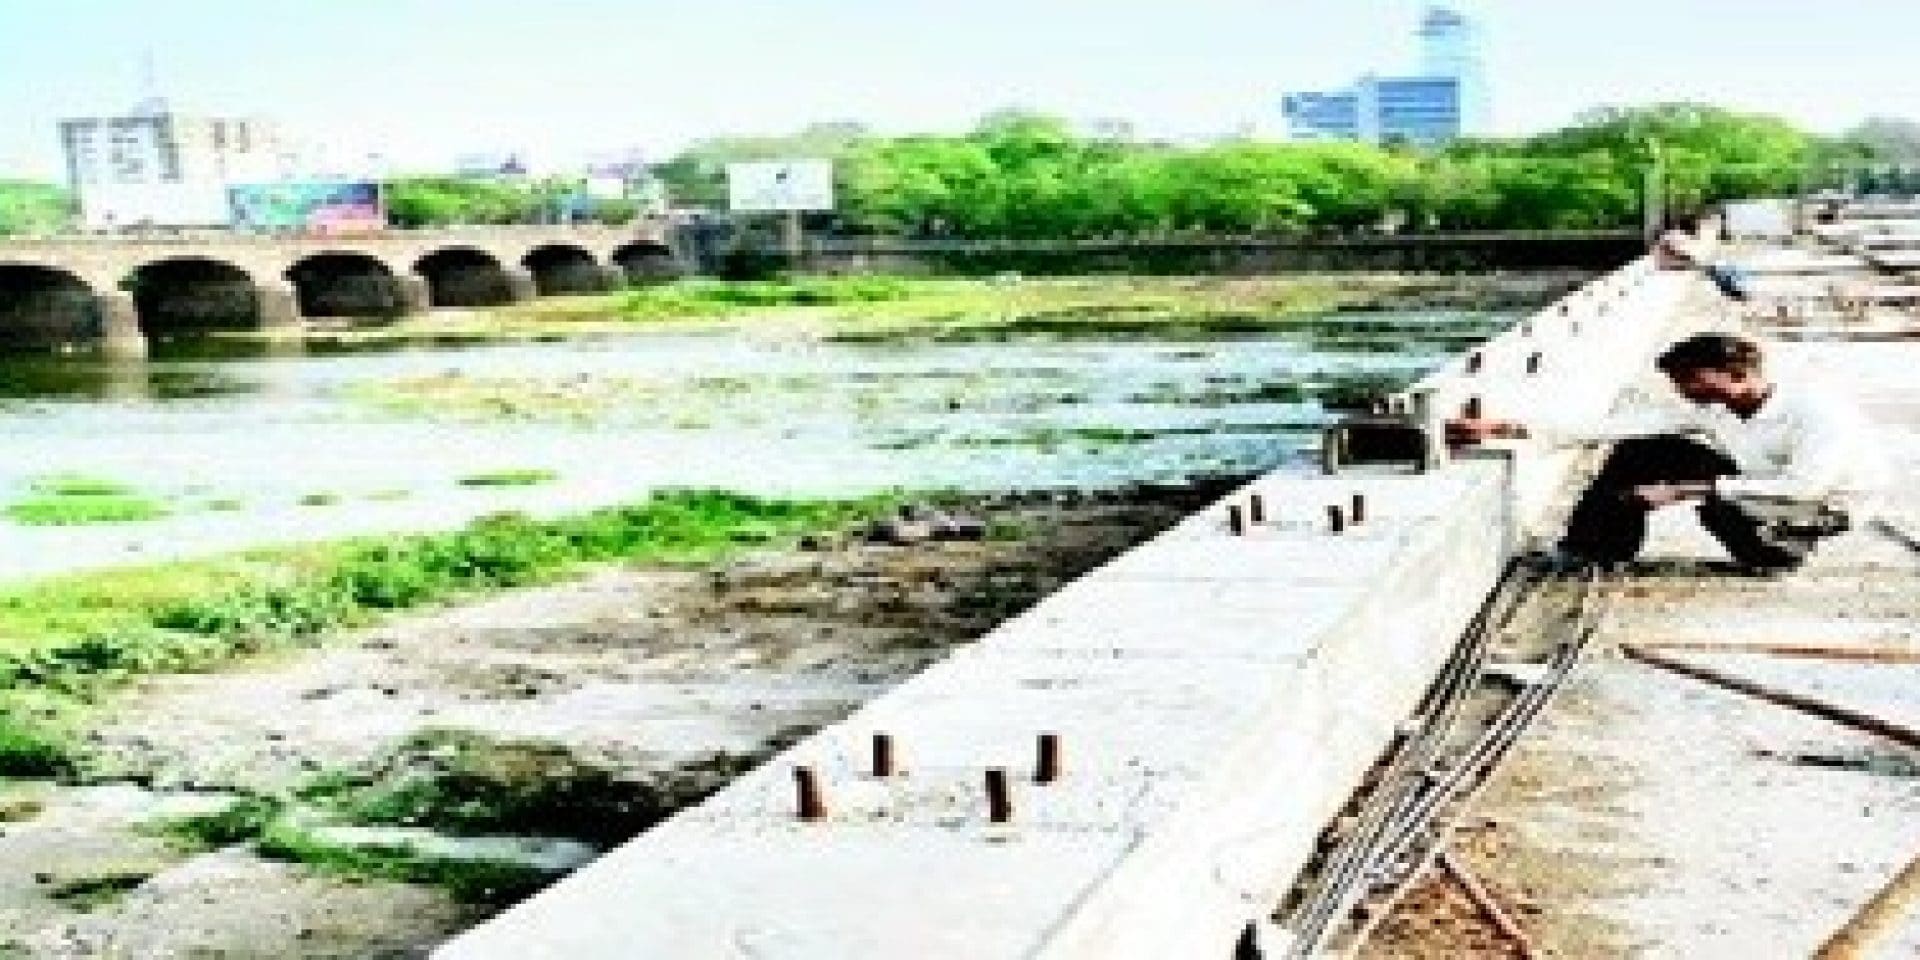 Hilti jobsite reference bund garden river bridge Pune India